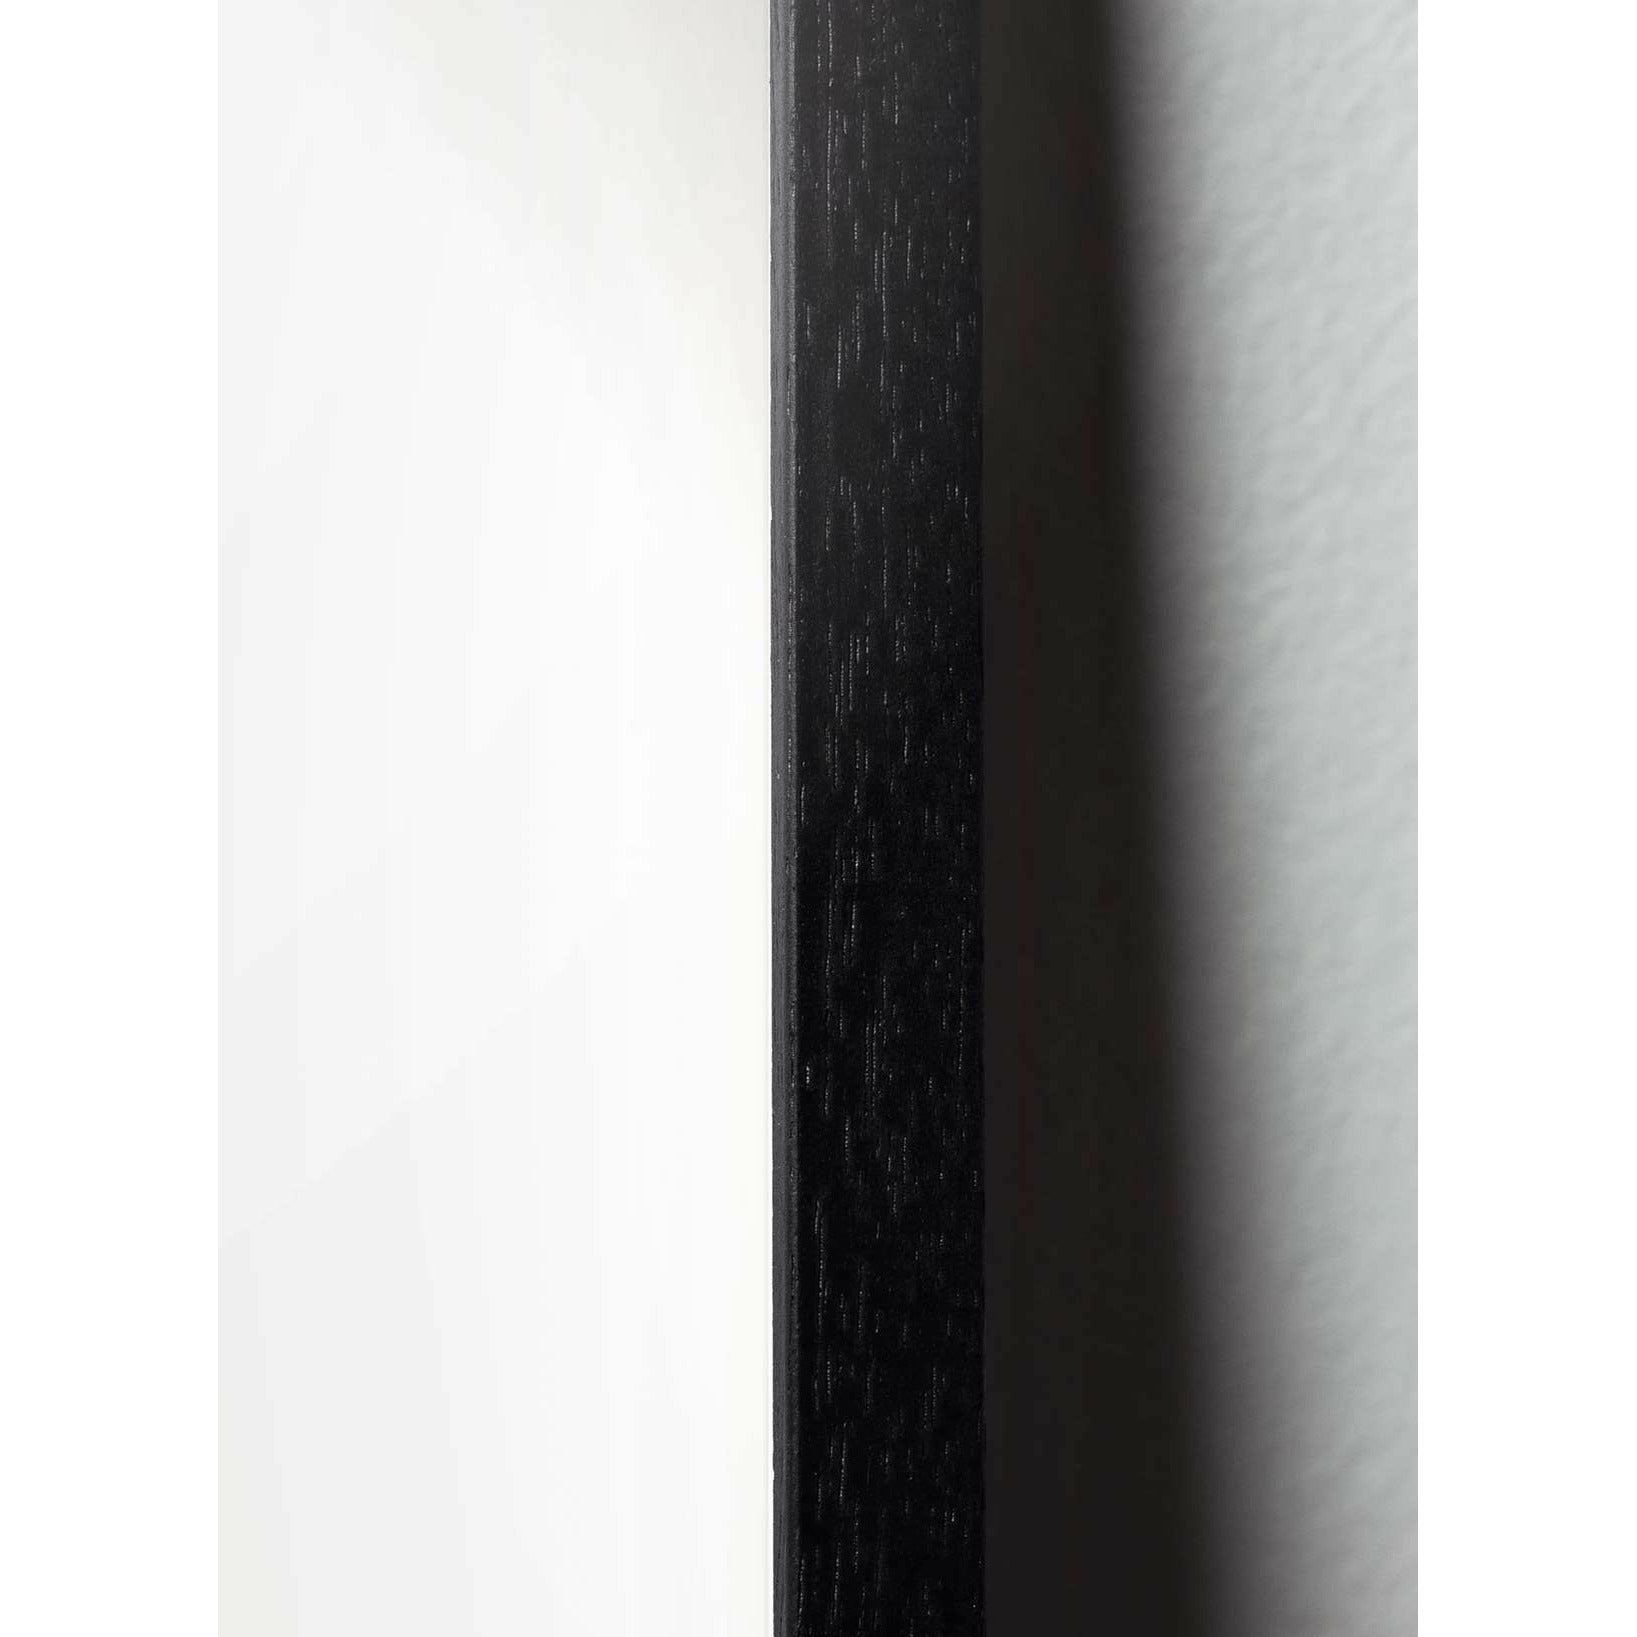 Plakát s labutí linií, rám v černém lakovaném dřevu 70 x100 cm, bílé pozadí